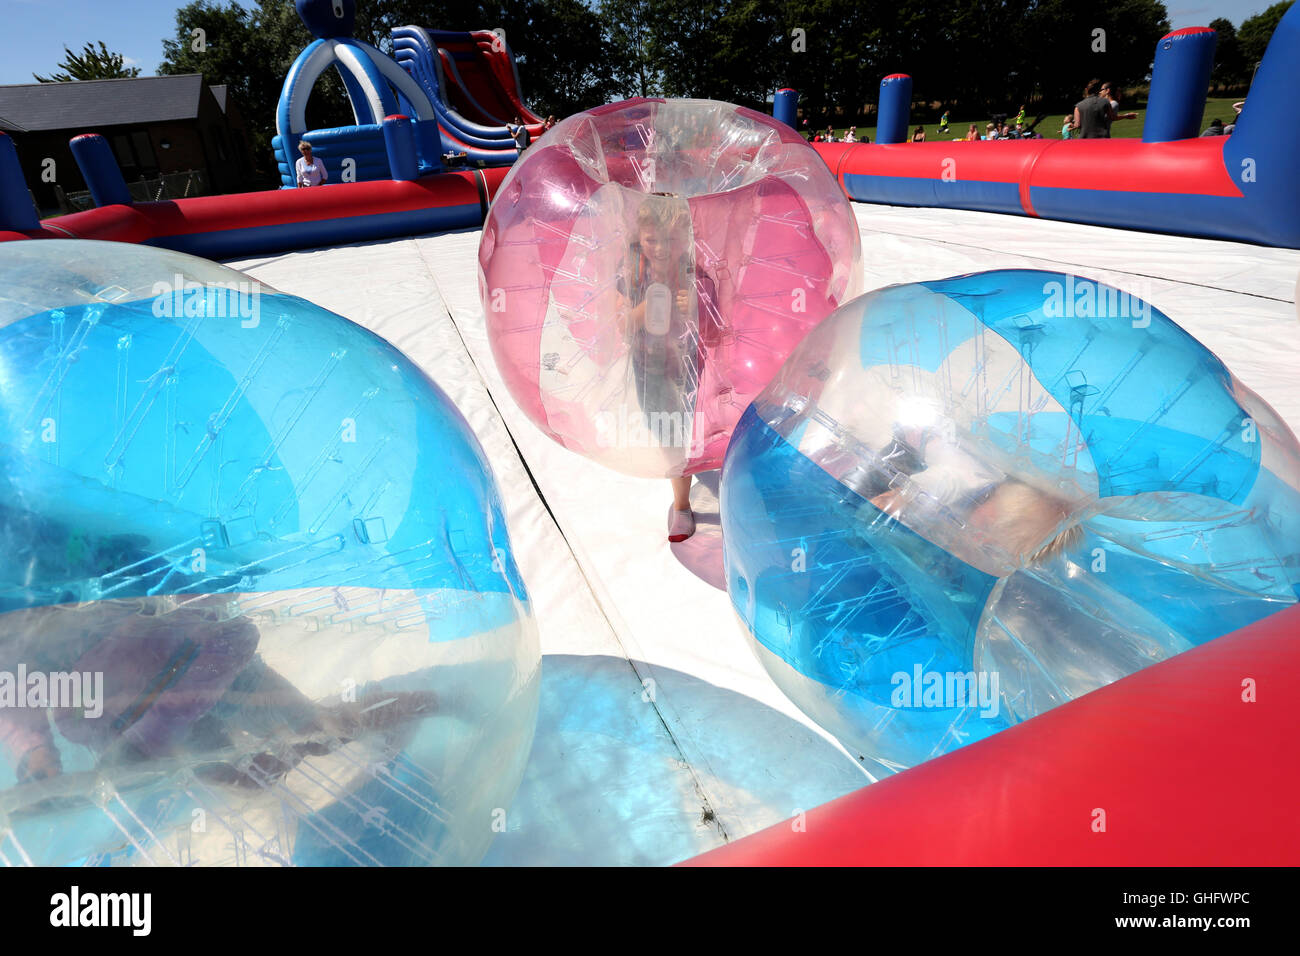 Zorbing-Spaß im Rahmen einer Sitzung im Freien spielen im Jubilee Park in North Bersted, West Sussex, UK. Dienstag, 9. August 2016. Stockfoto